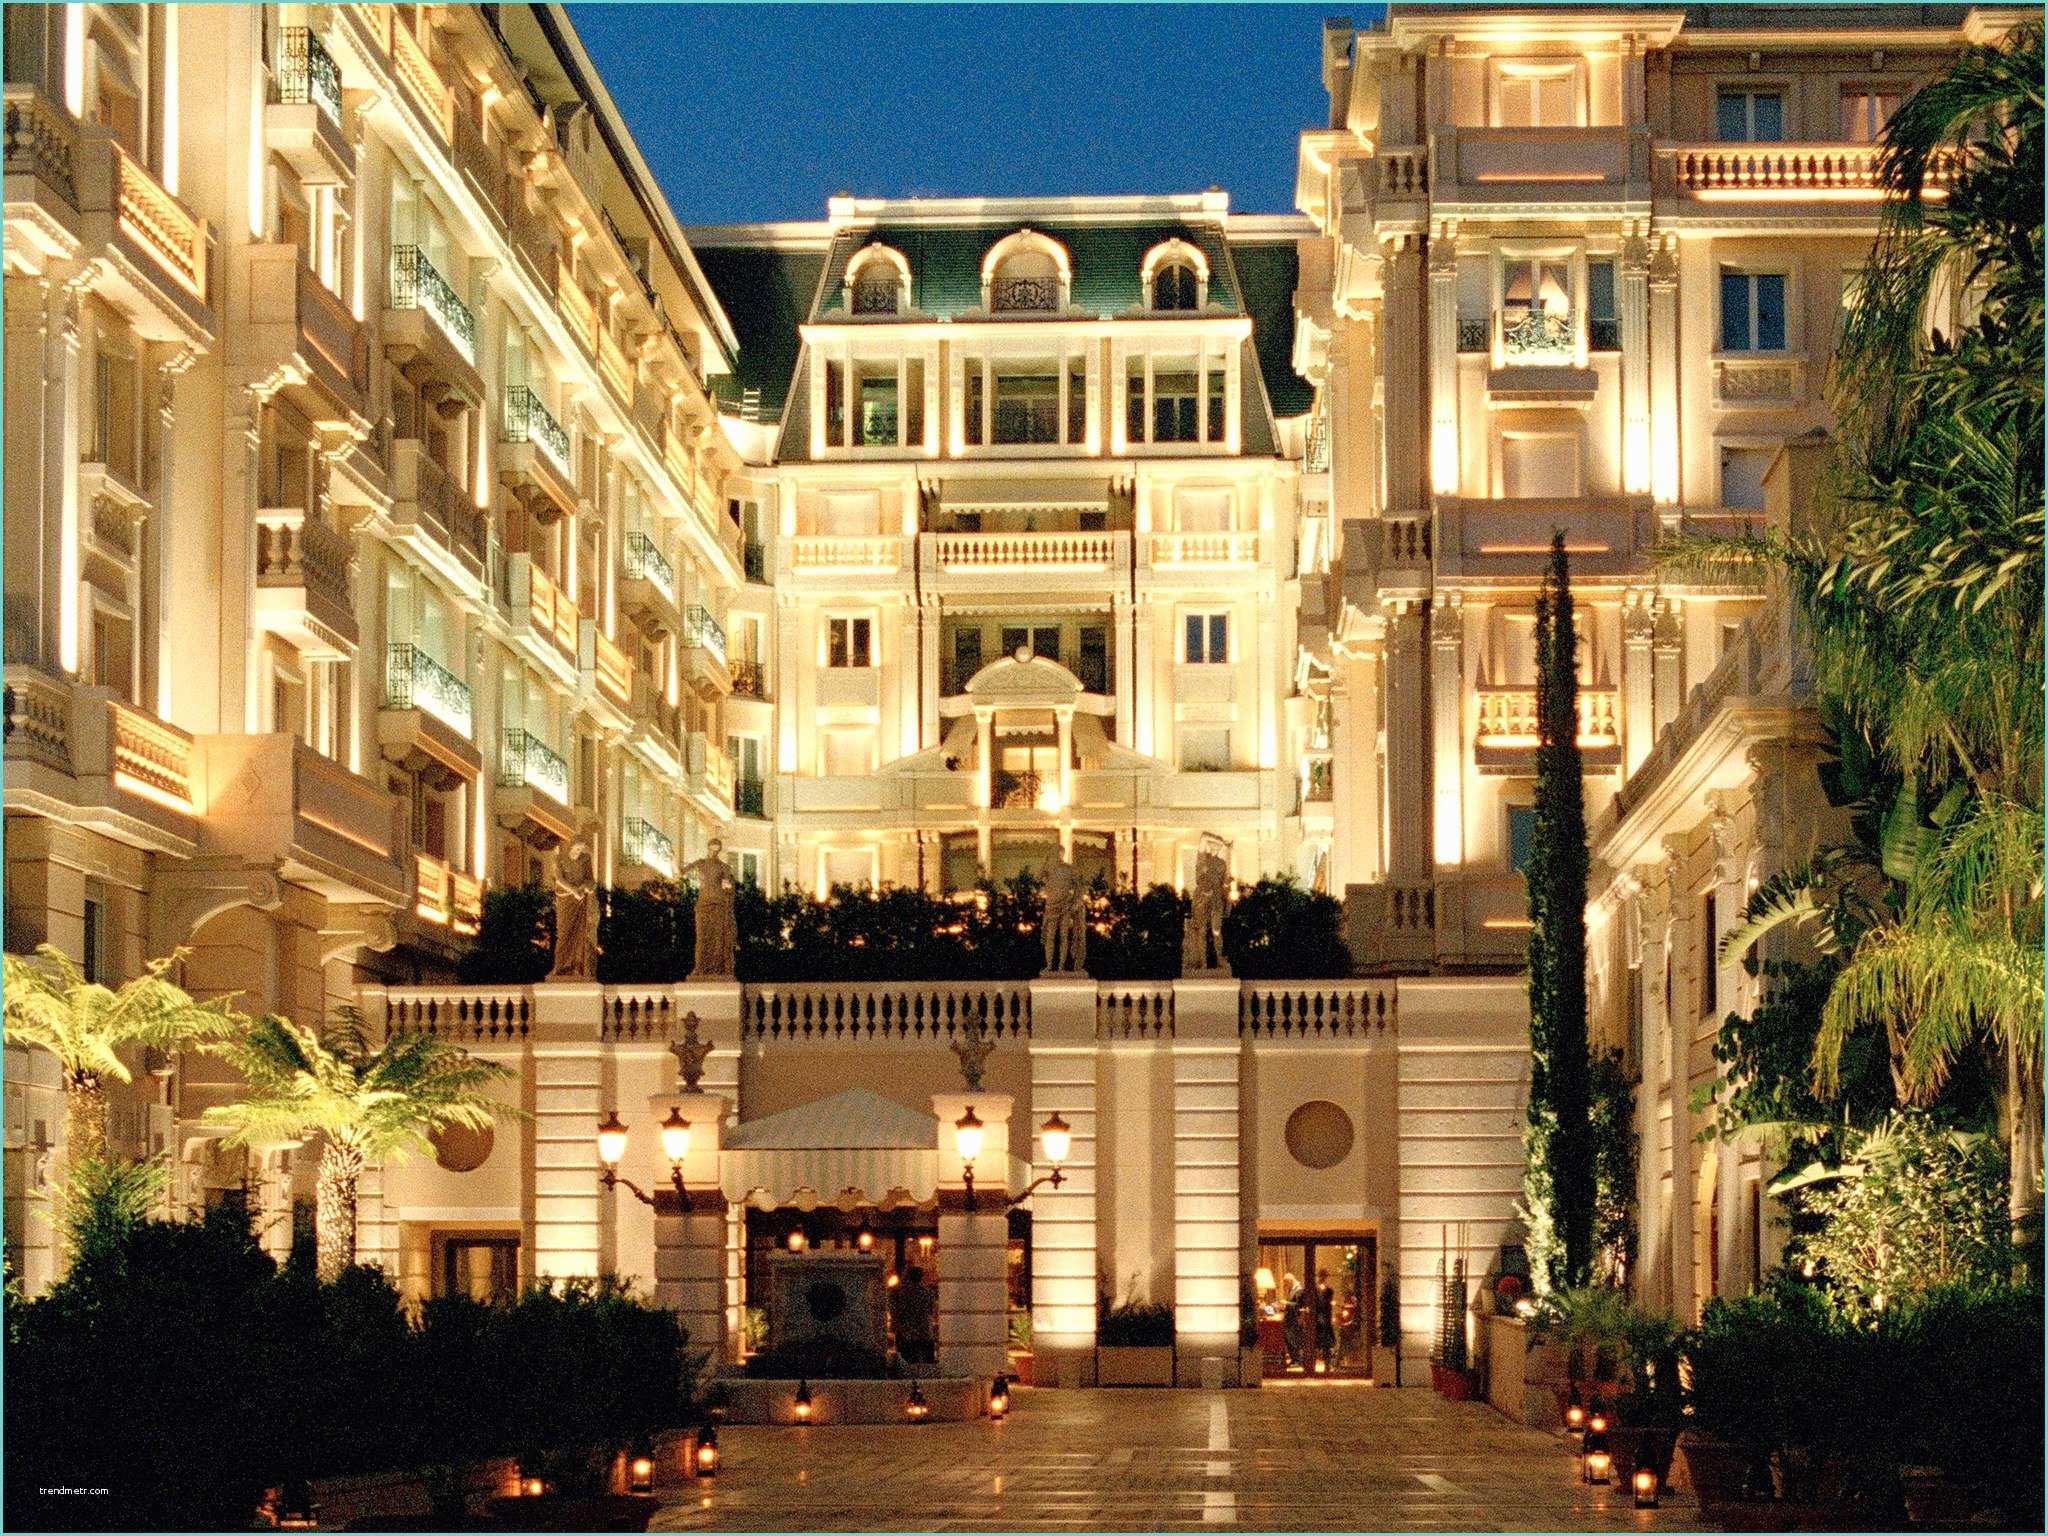 Metropole Hotel Monte Carlo Hôtel Métropole Monte Carlo